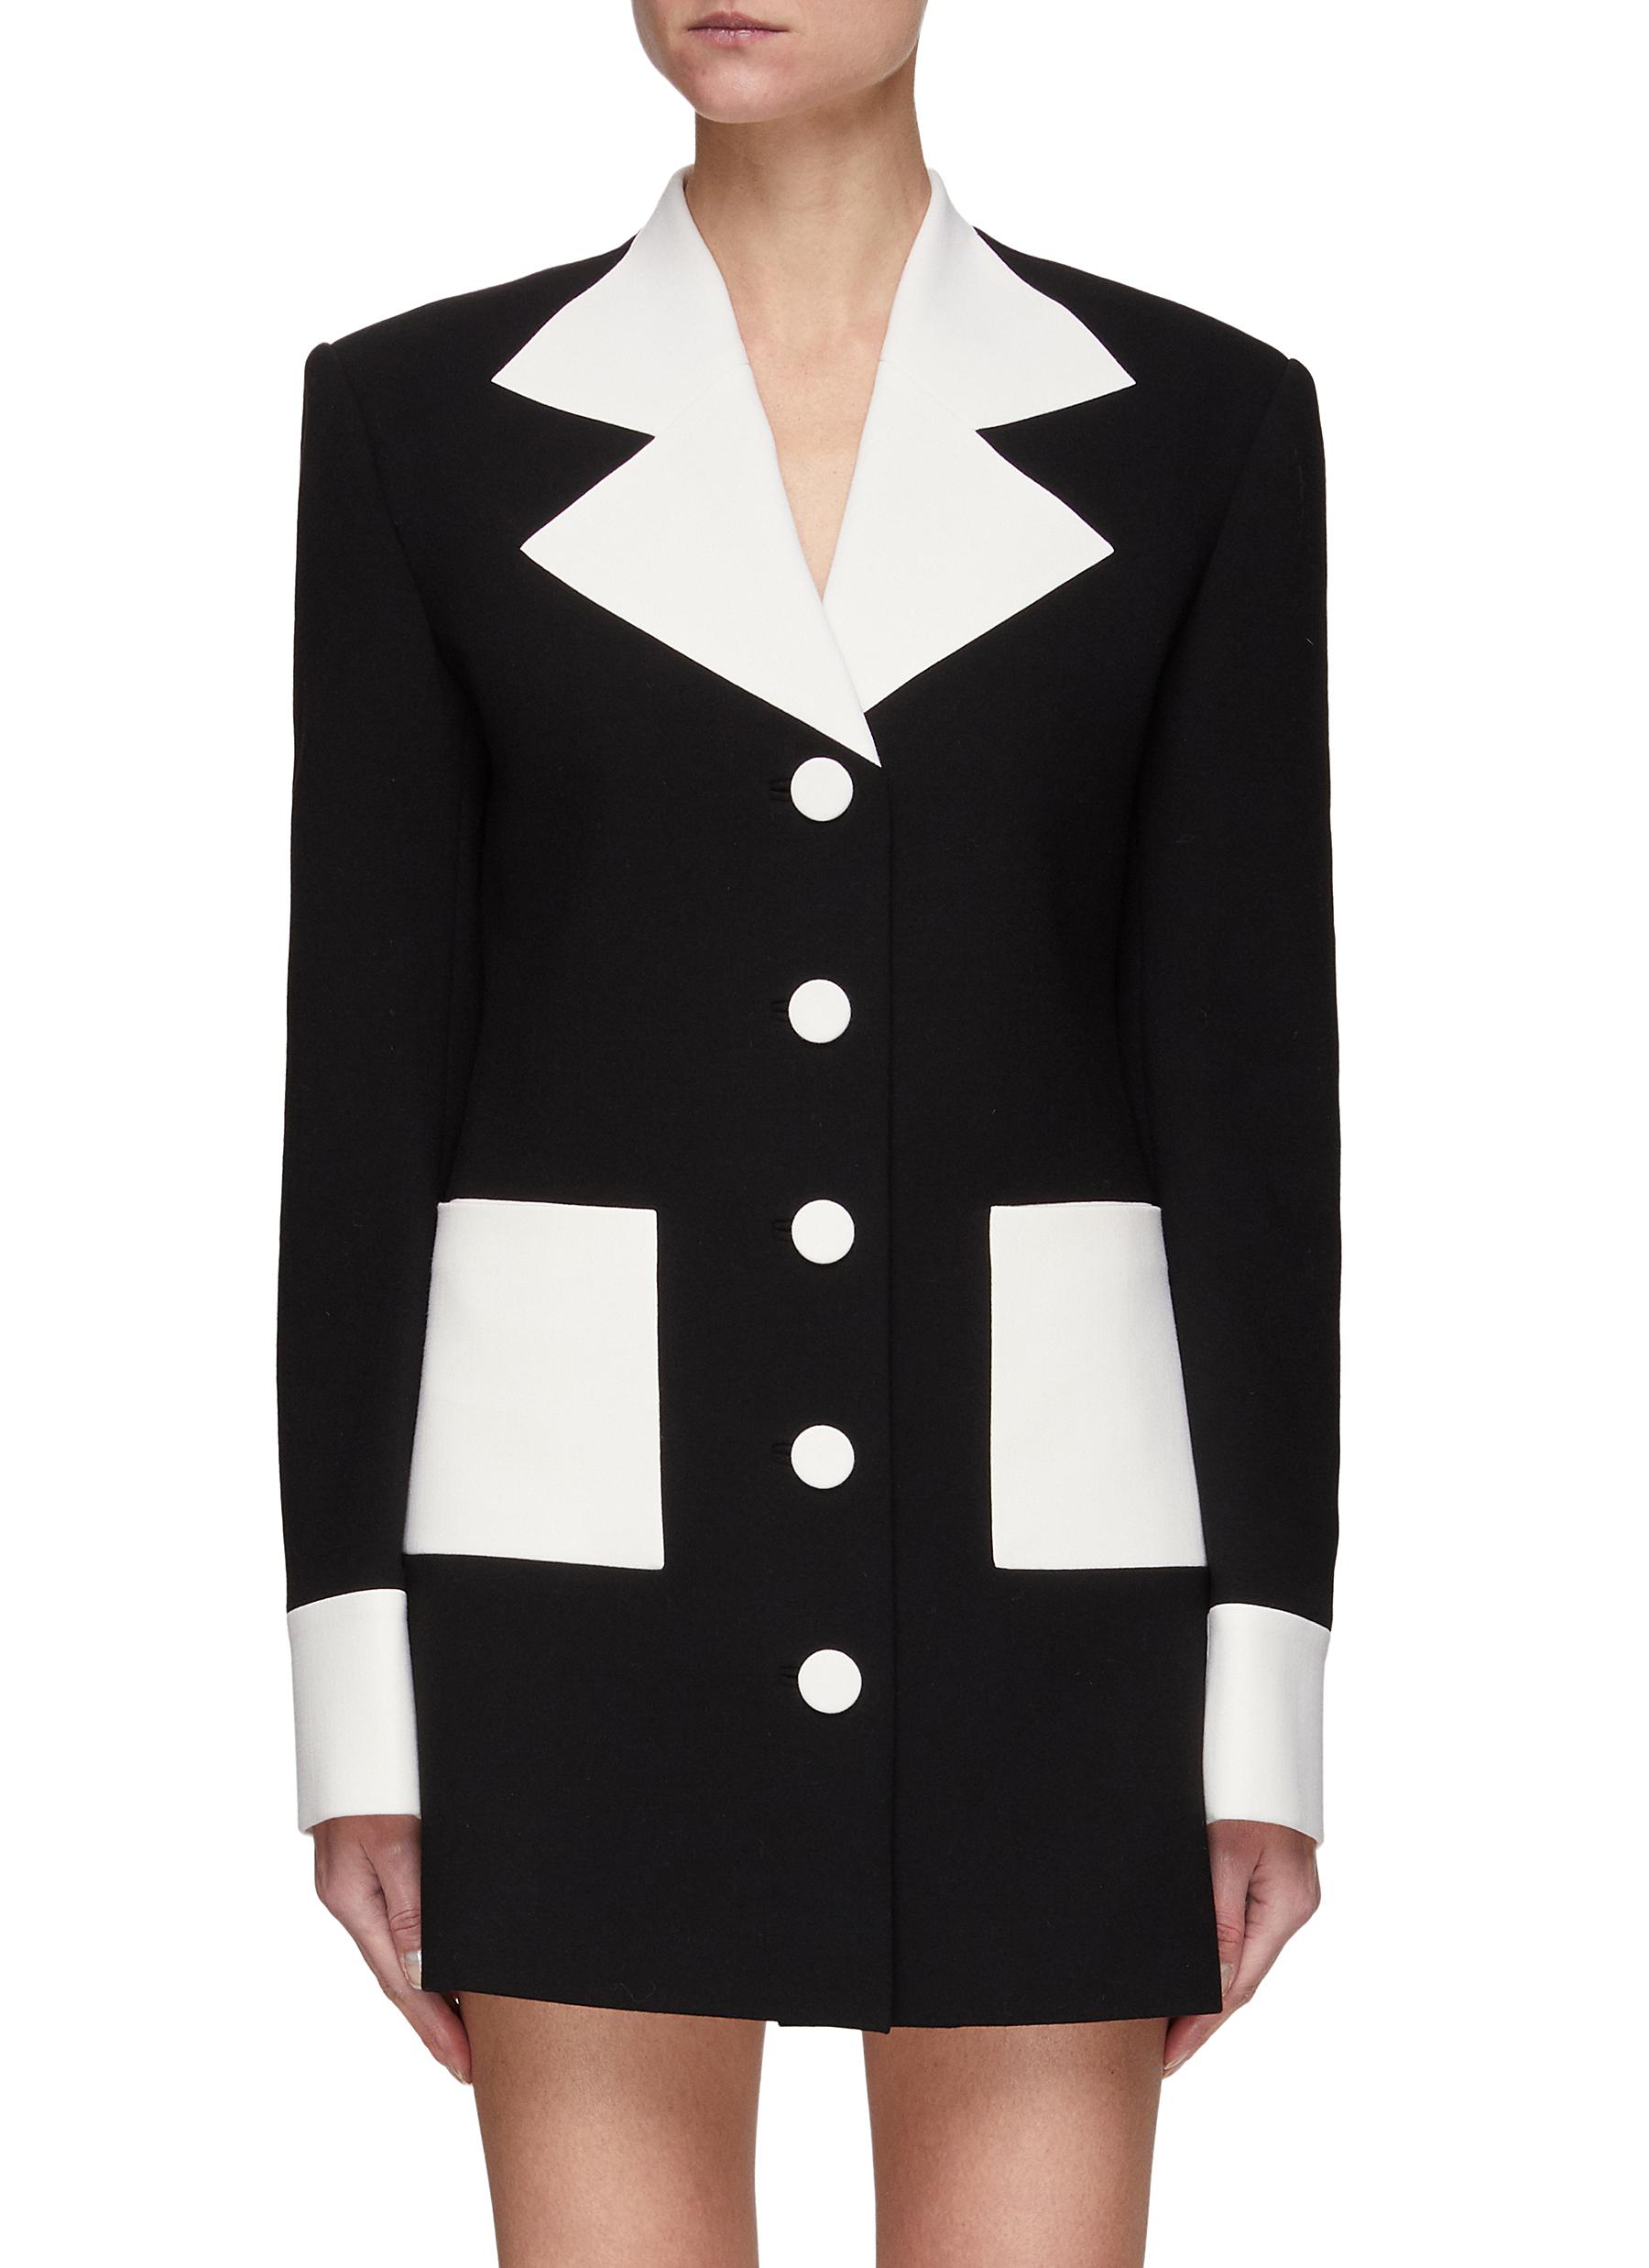 'Malevich' Contrast Blazer Mini Dress